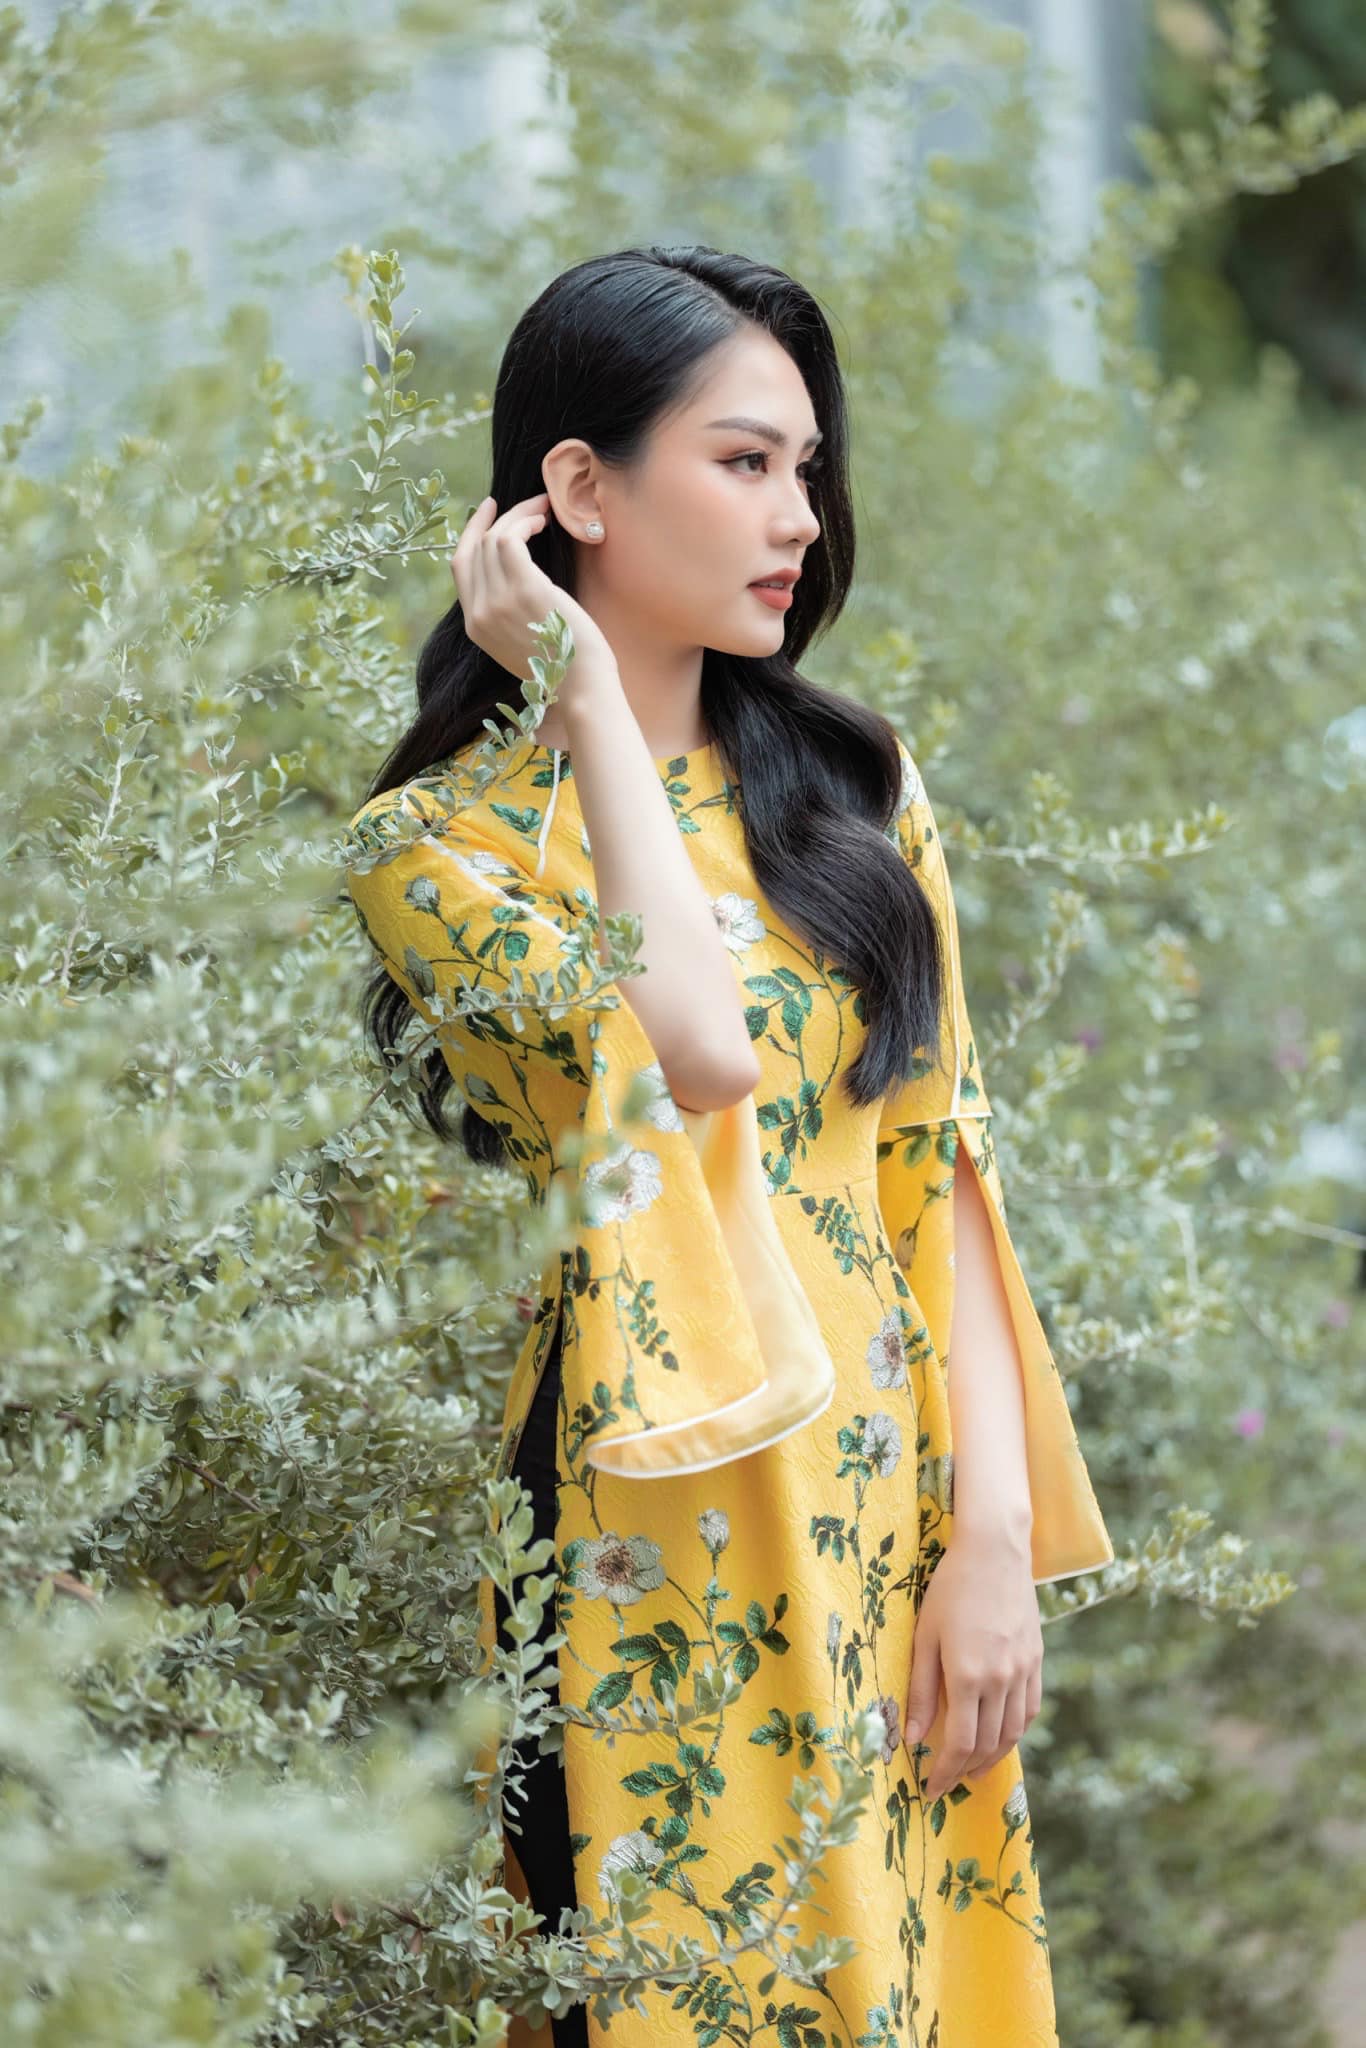 Mỹ nhân Đồng Nai được dự đoán đăng quang Miss World Vietnam 2022: MC song ngử sở hữu IELTS 8.0, từng lọt Top 5 Hoa hậu Việt Nam - Ảnh 5.